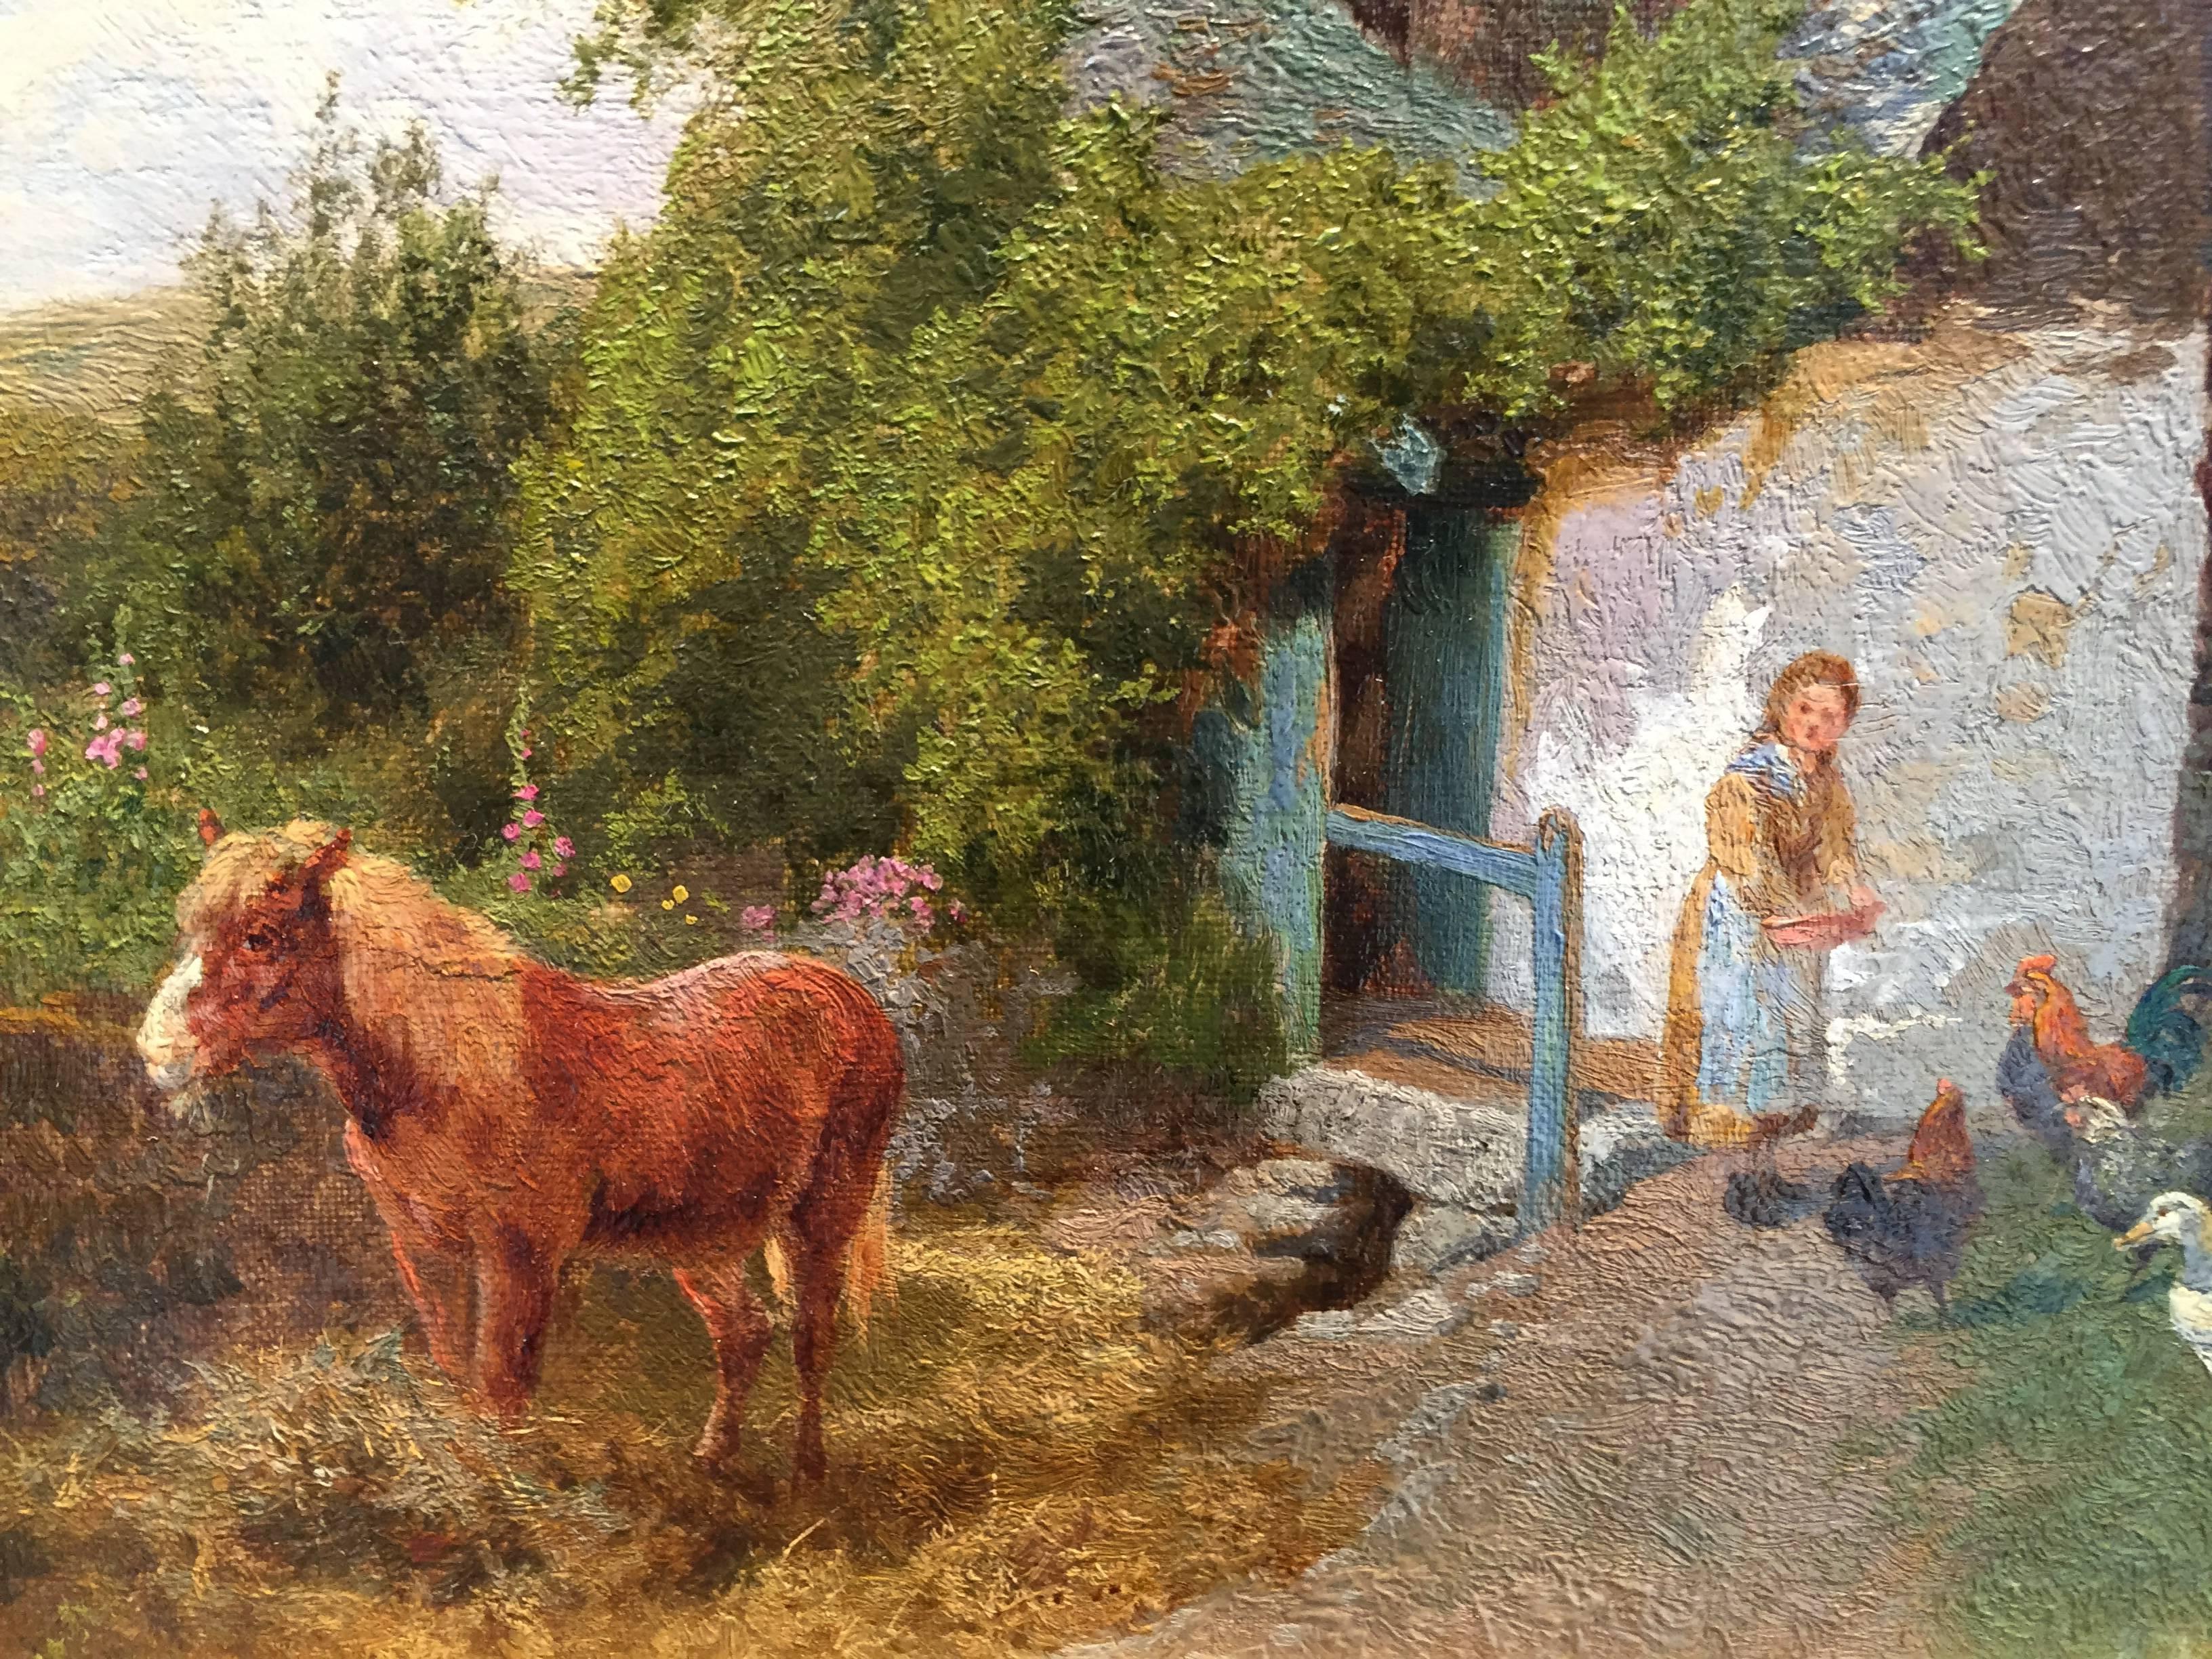 Charles Collins, comme on l'appelait, est né à Hampstead en 1851. Il a commencé à peindre des tableaux très tôt en commençant par des paysages avec du bétail et des personnages. Il étudie à la West London School of Art - mais se rend vite compte que